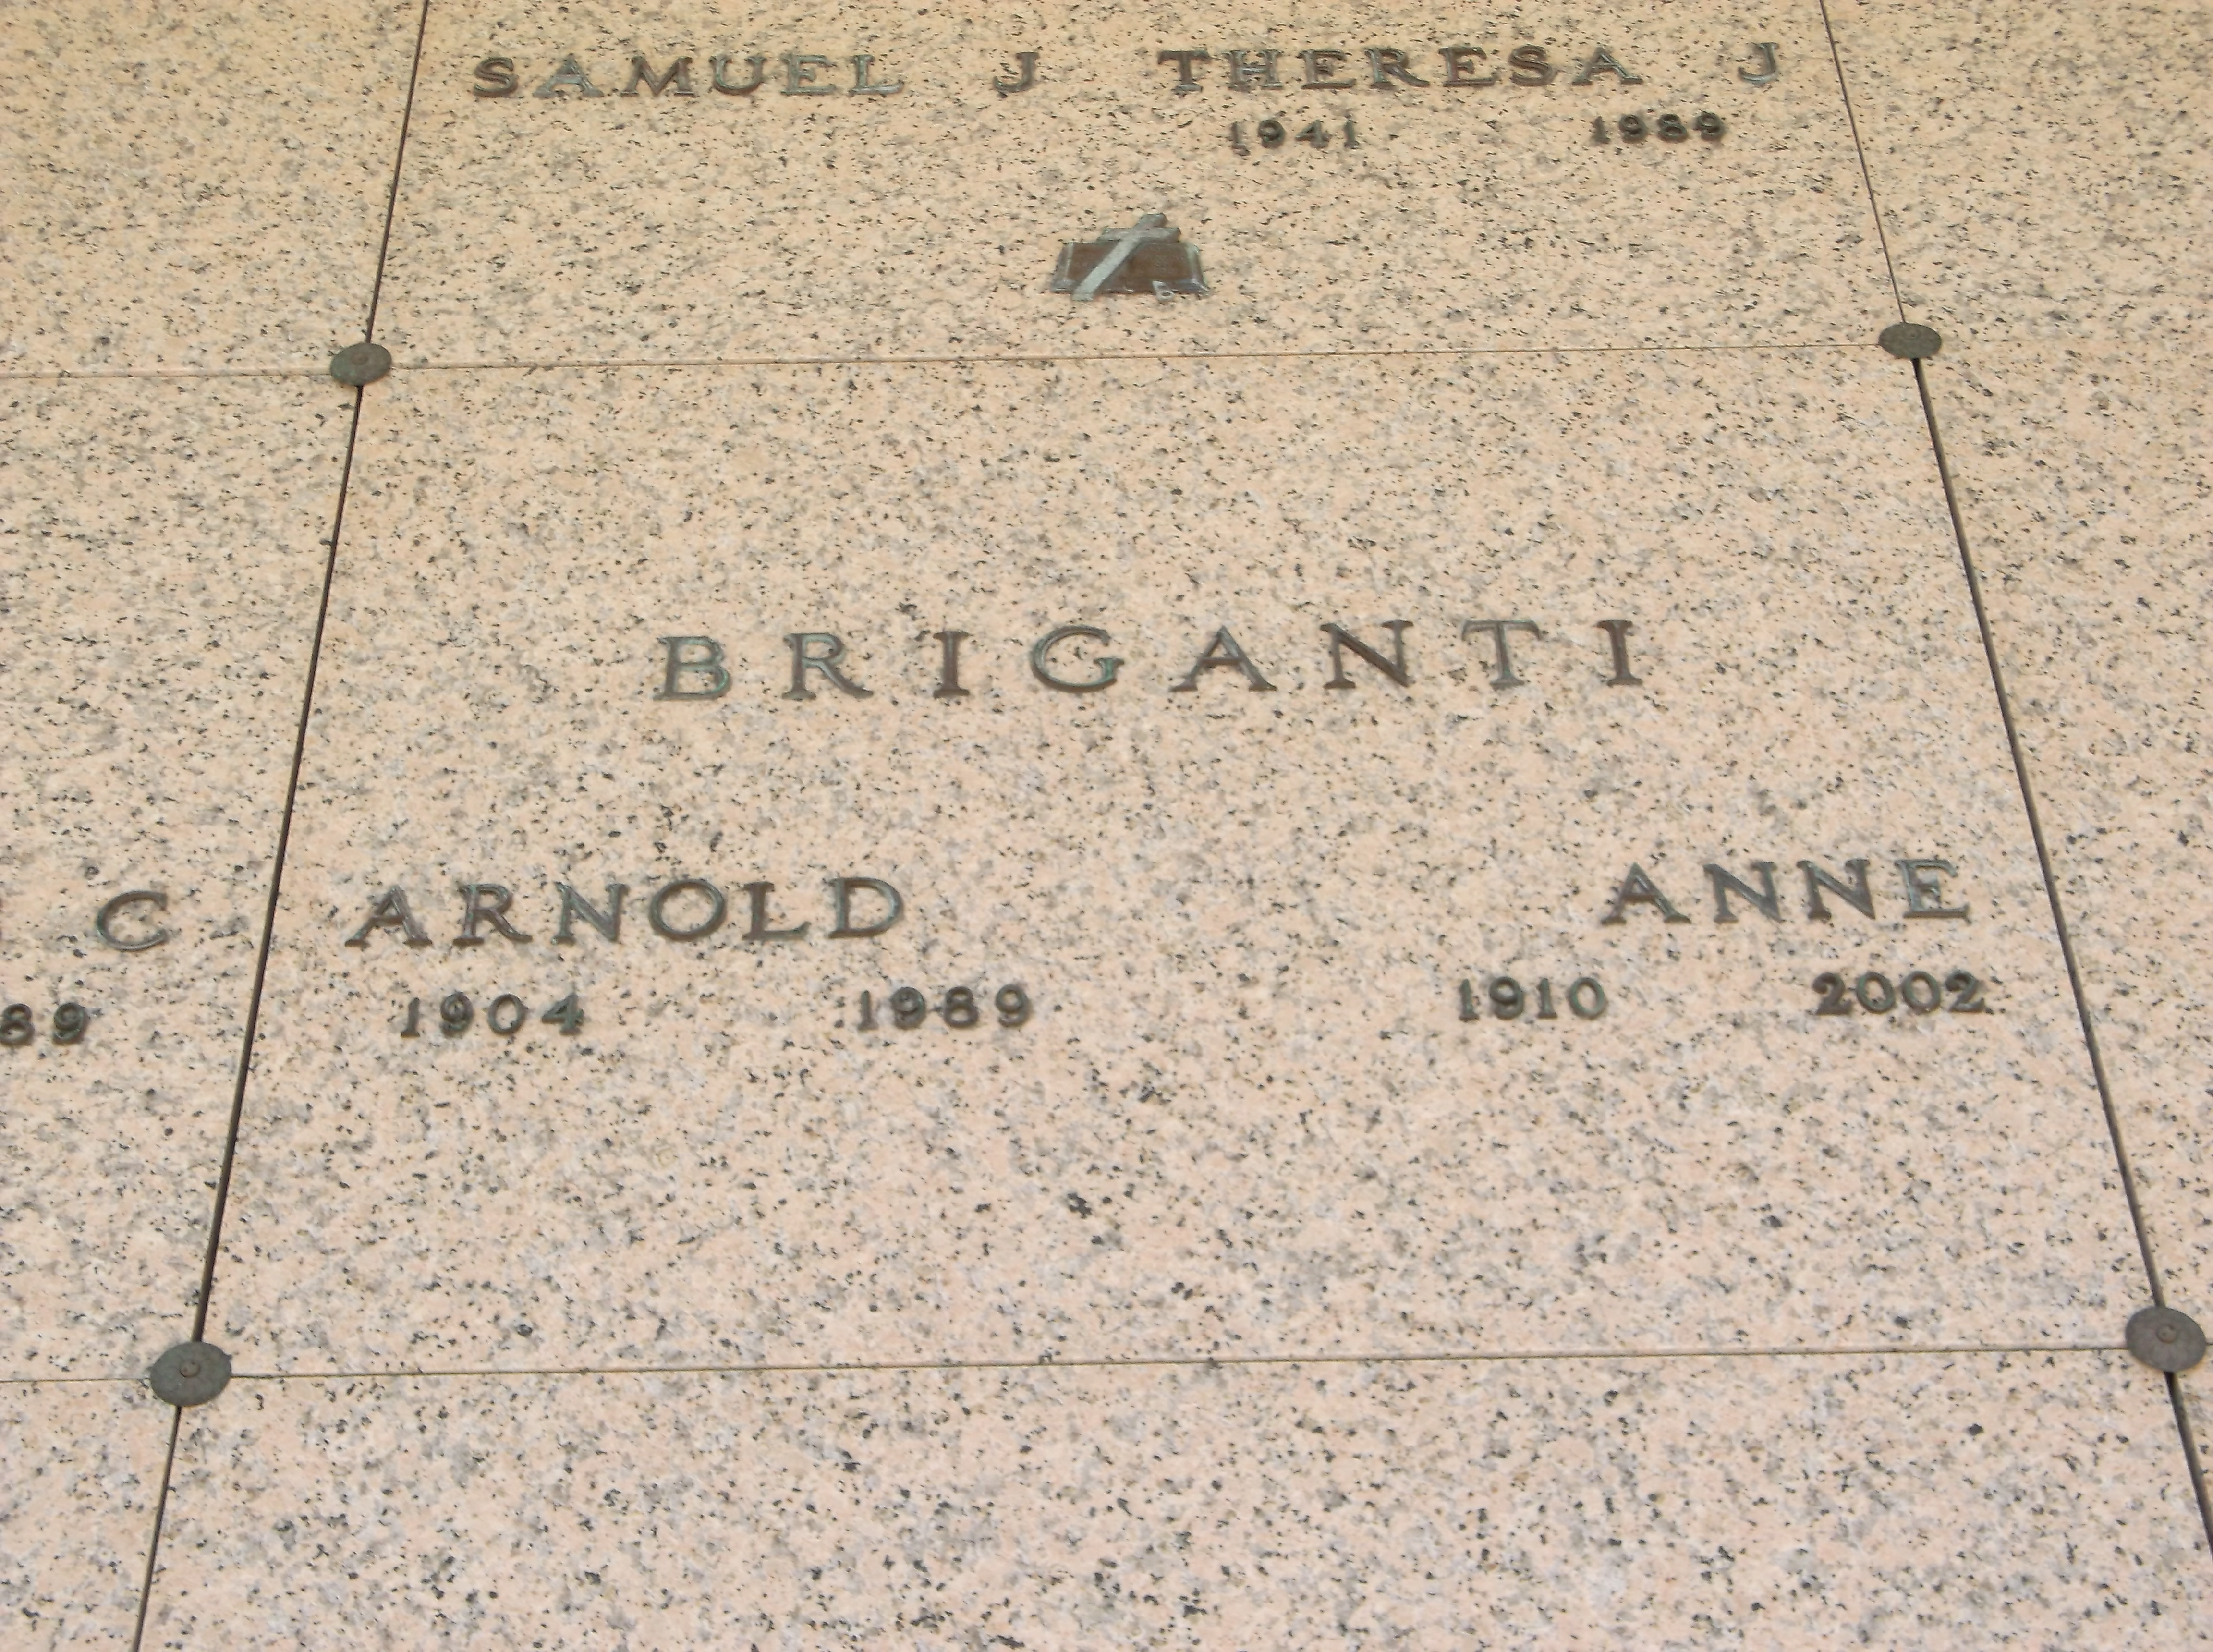 Arnold Briganti